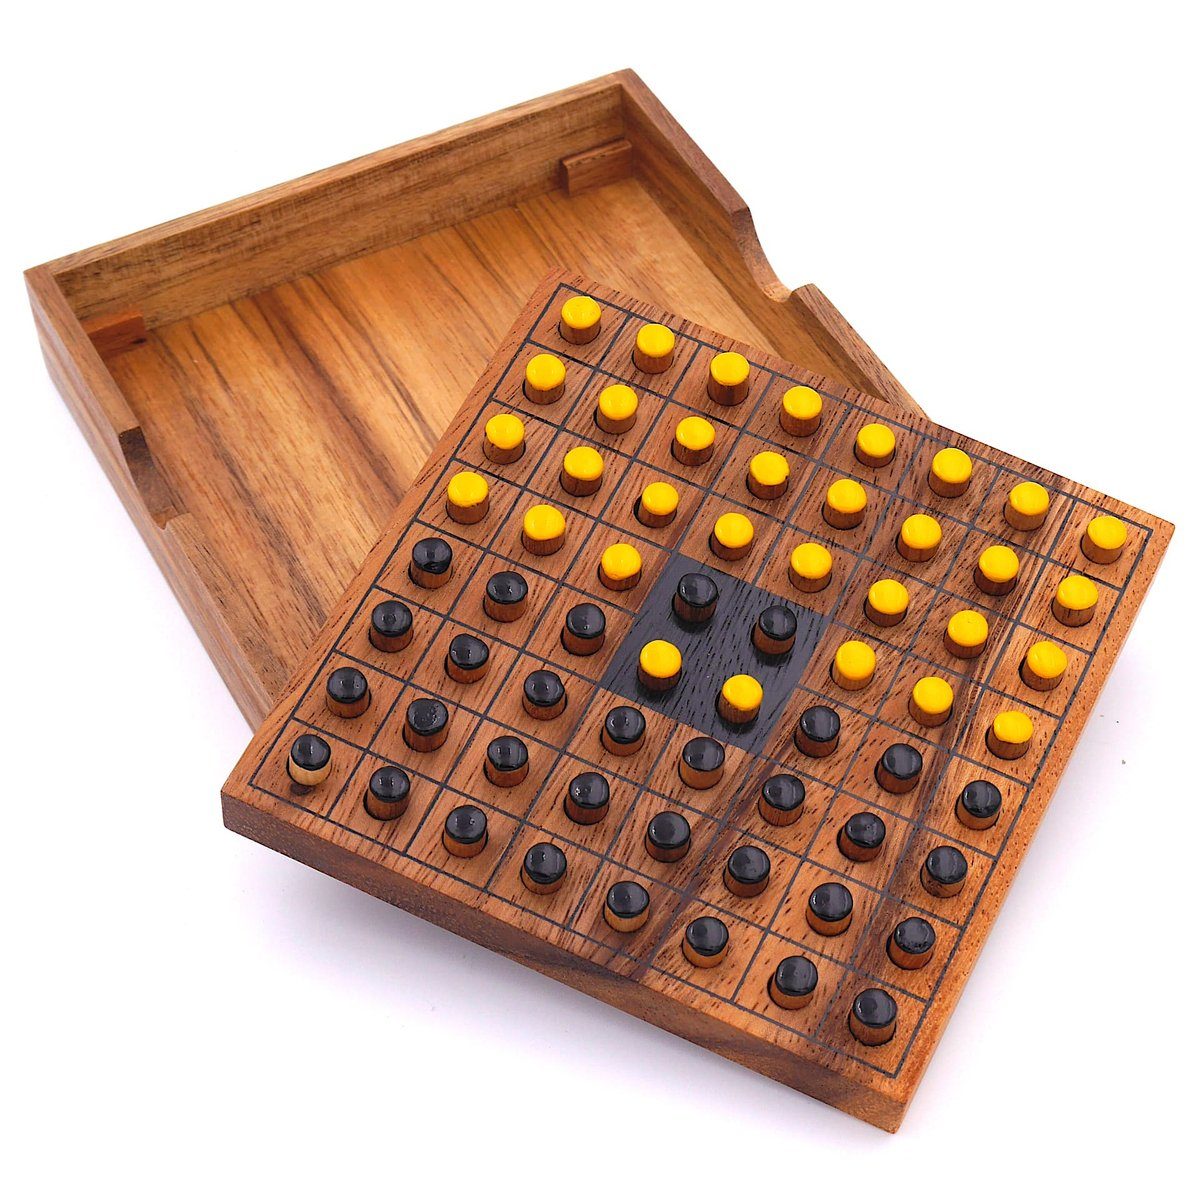 2 Holz, Denkspiele edlem aus Personen für Holzspiel Reversi ROMBOL Brettspiel gelb/schwarz – Interessantes Strategiespiel Spiel,